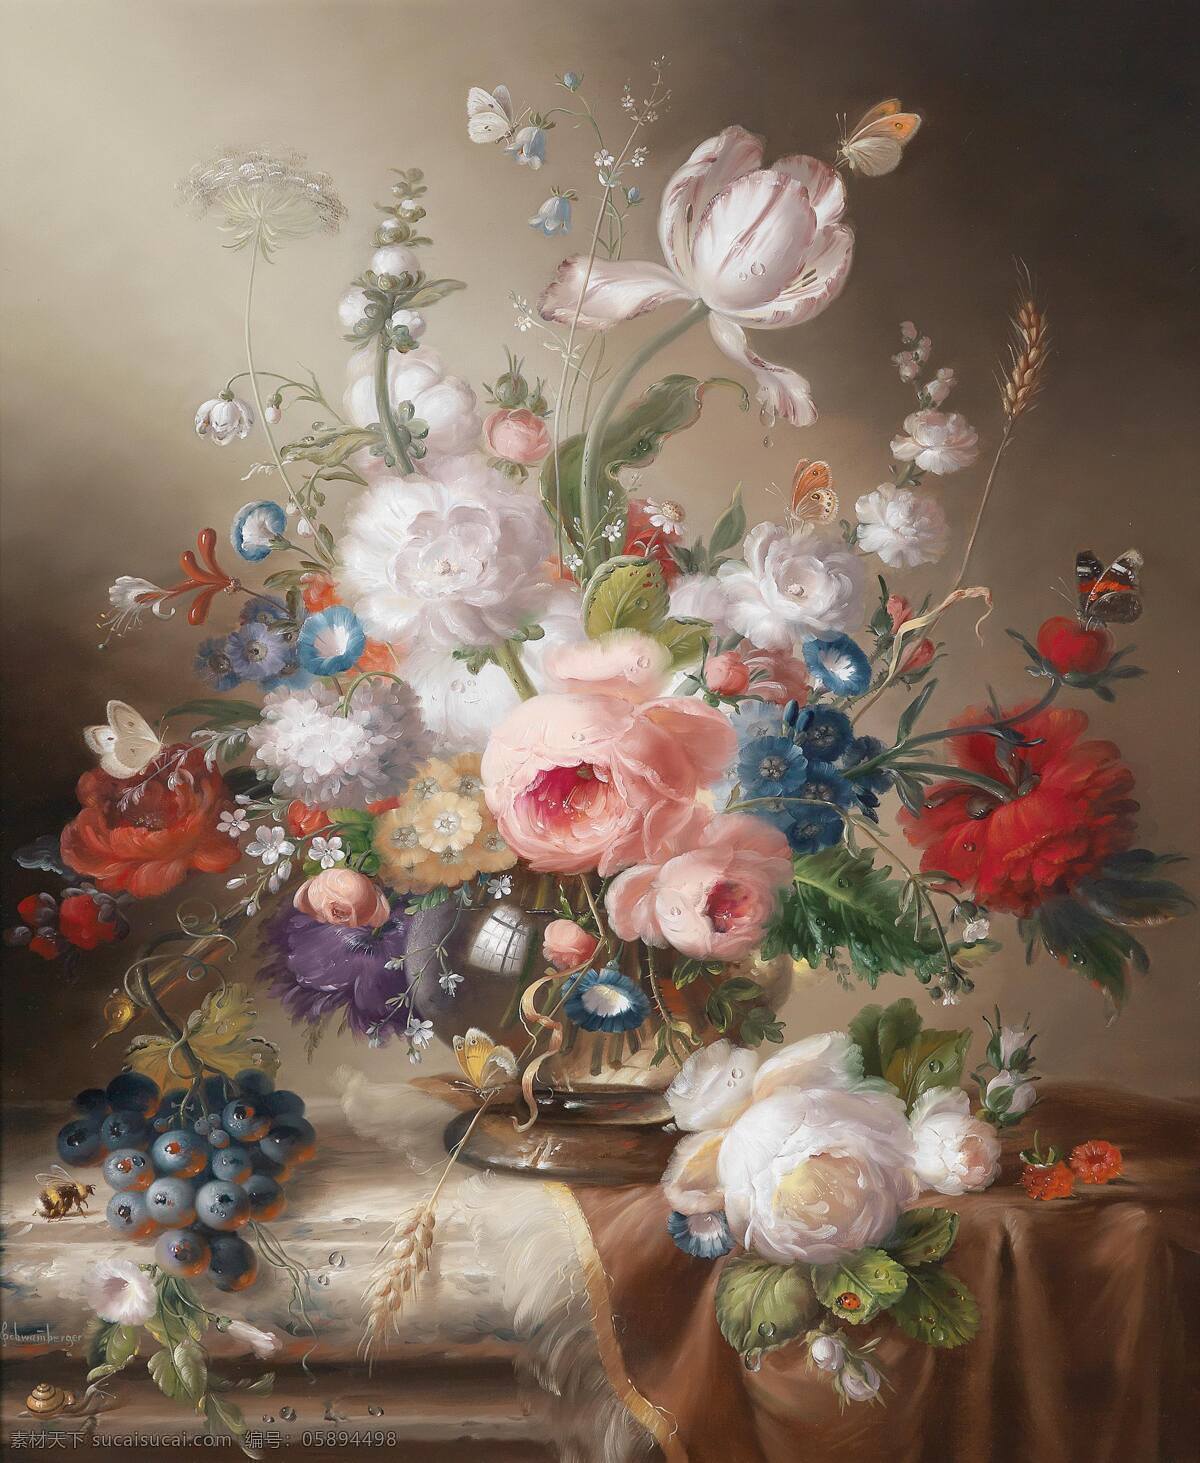 鲜花水果 混搭鲜花 蝴蝶 蜜蜂 蜗牛 花大姐 永恒之美 19世纪油画 油画 绘画书法 文化艺术